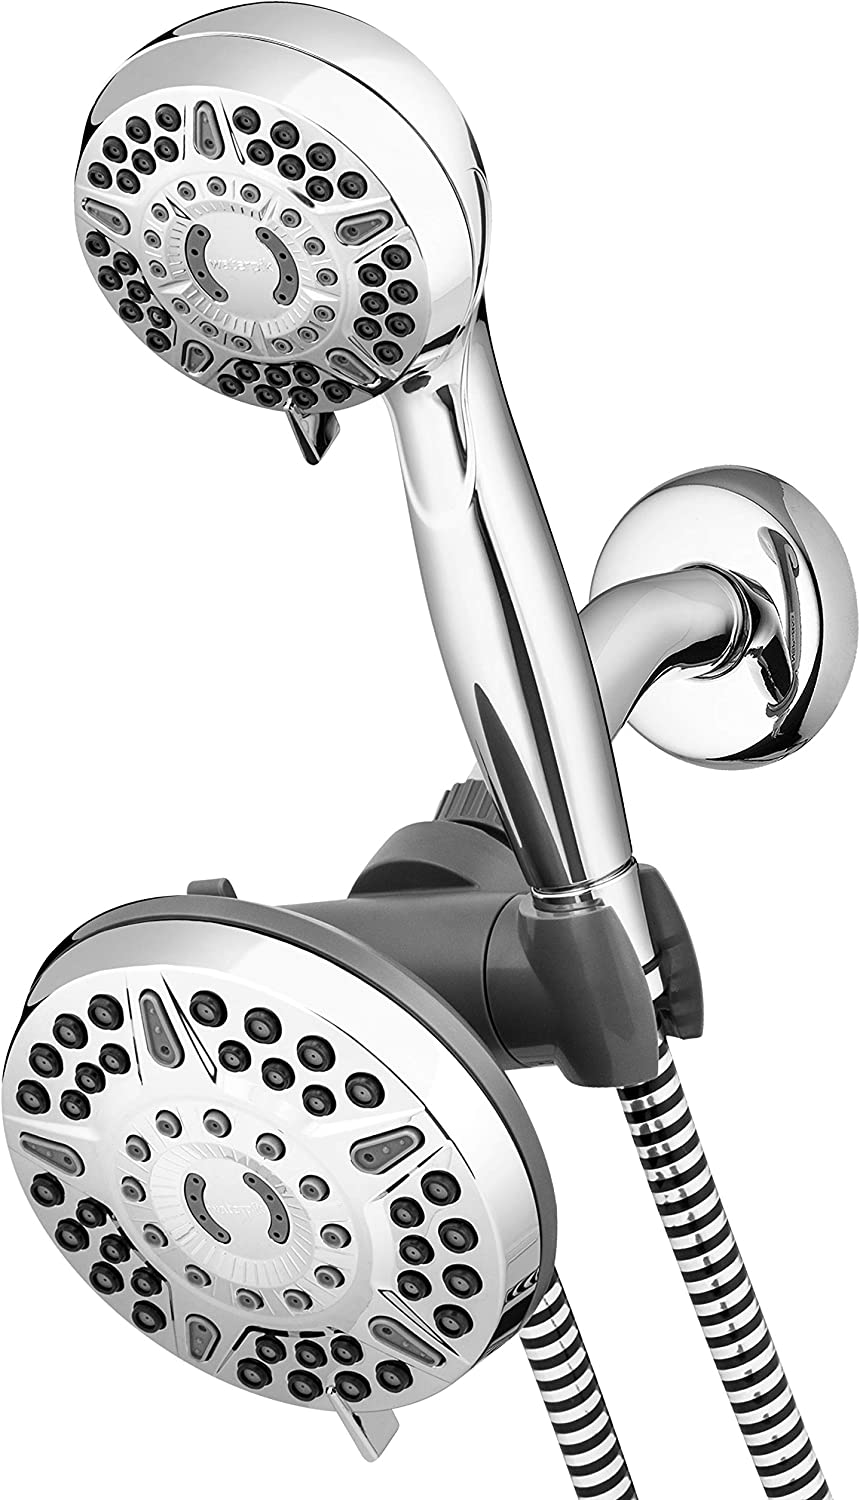 Waterpik 12-Mode 2-in-1 Dual Shower Head System